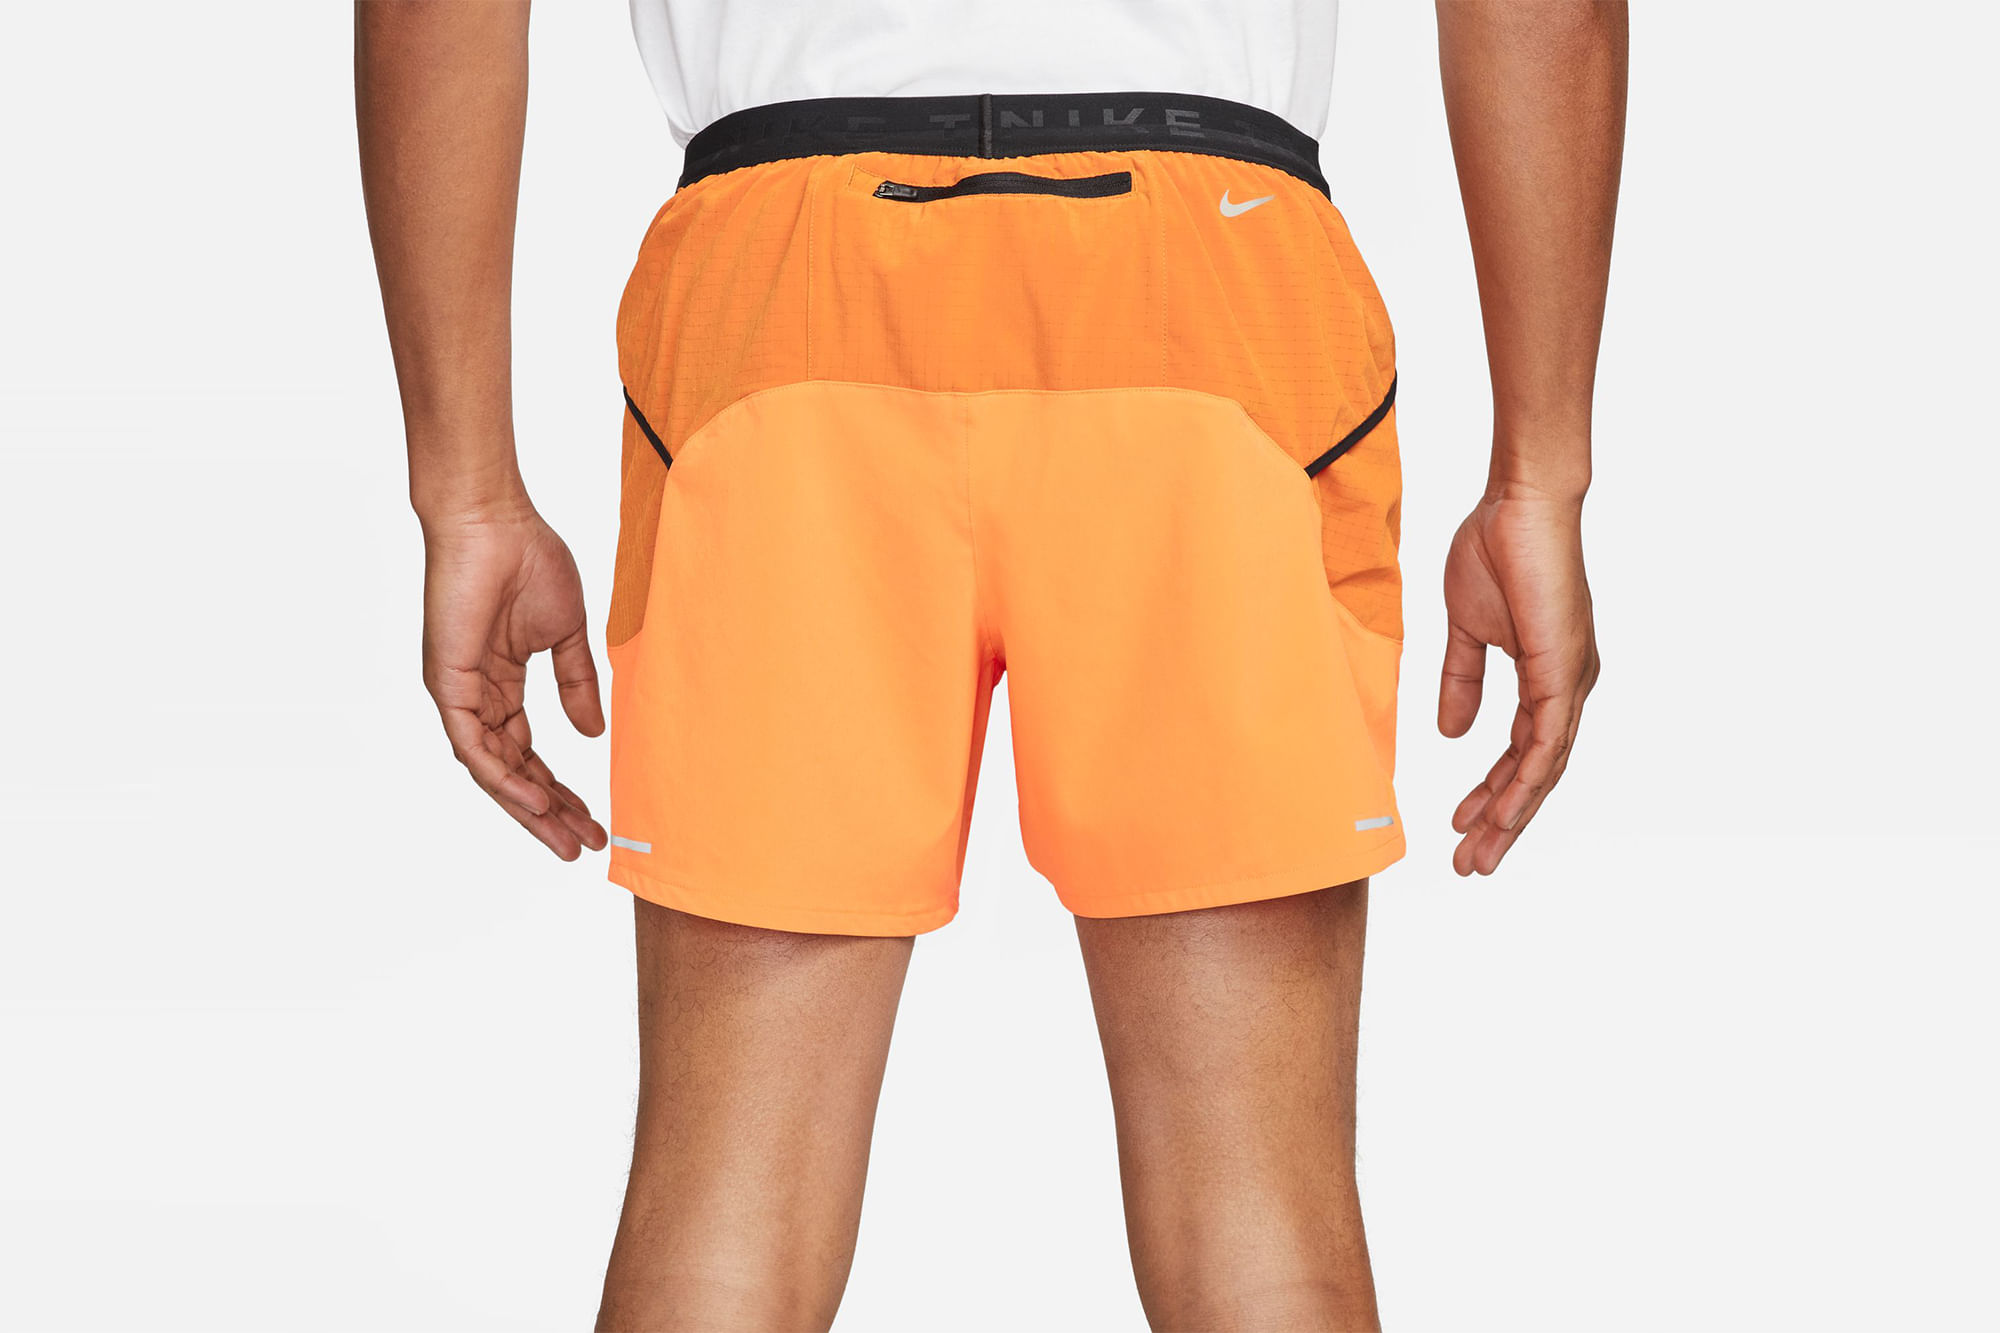 Pantalon Nike Running Naranja